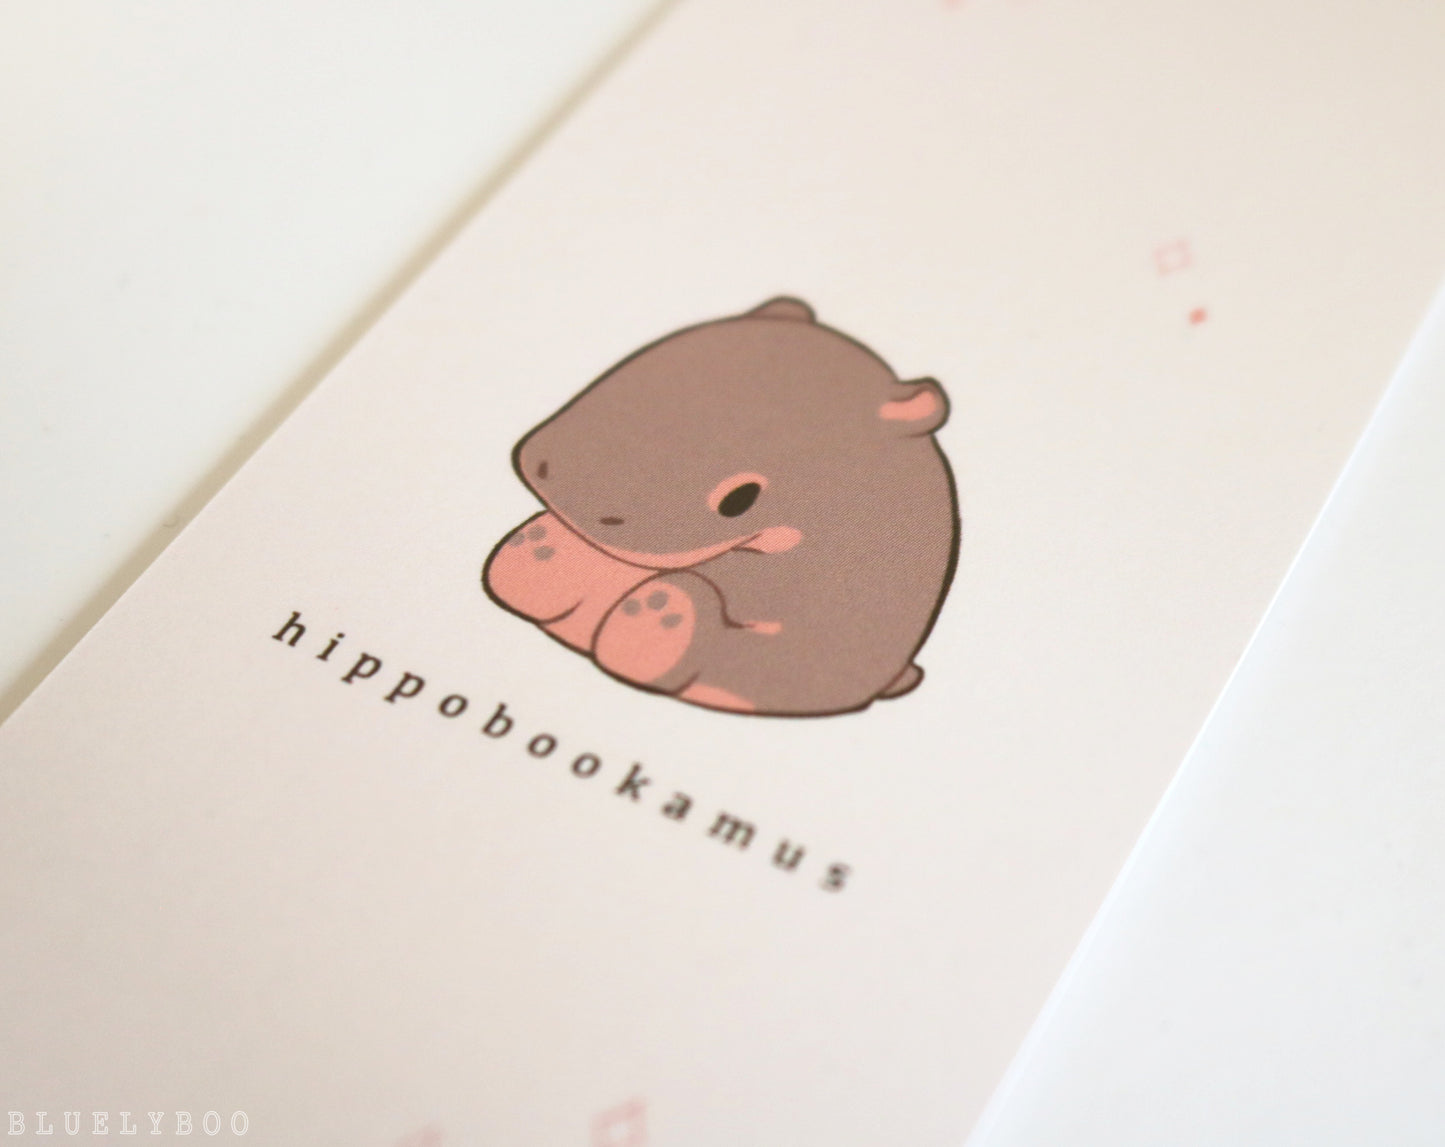 Hippobookamus Bookmark